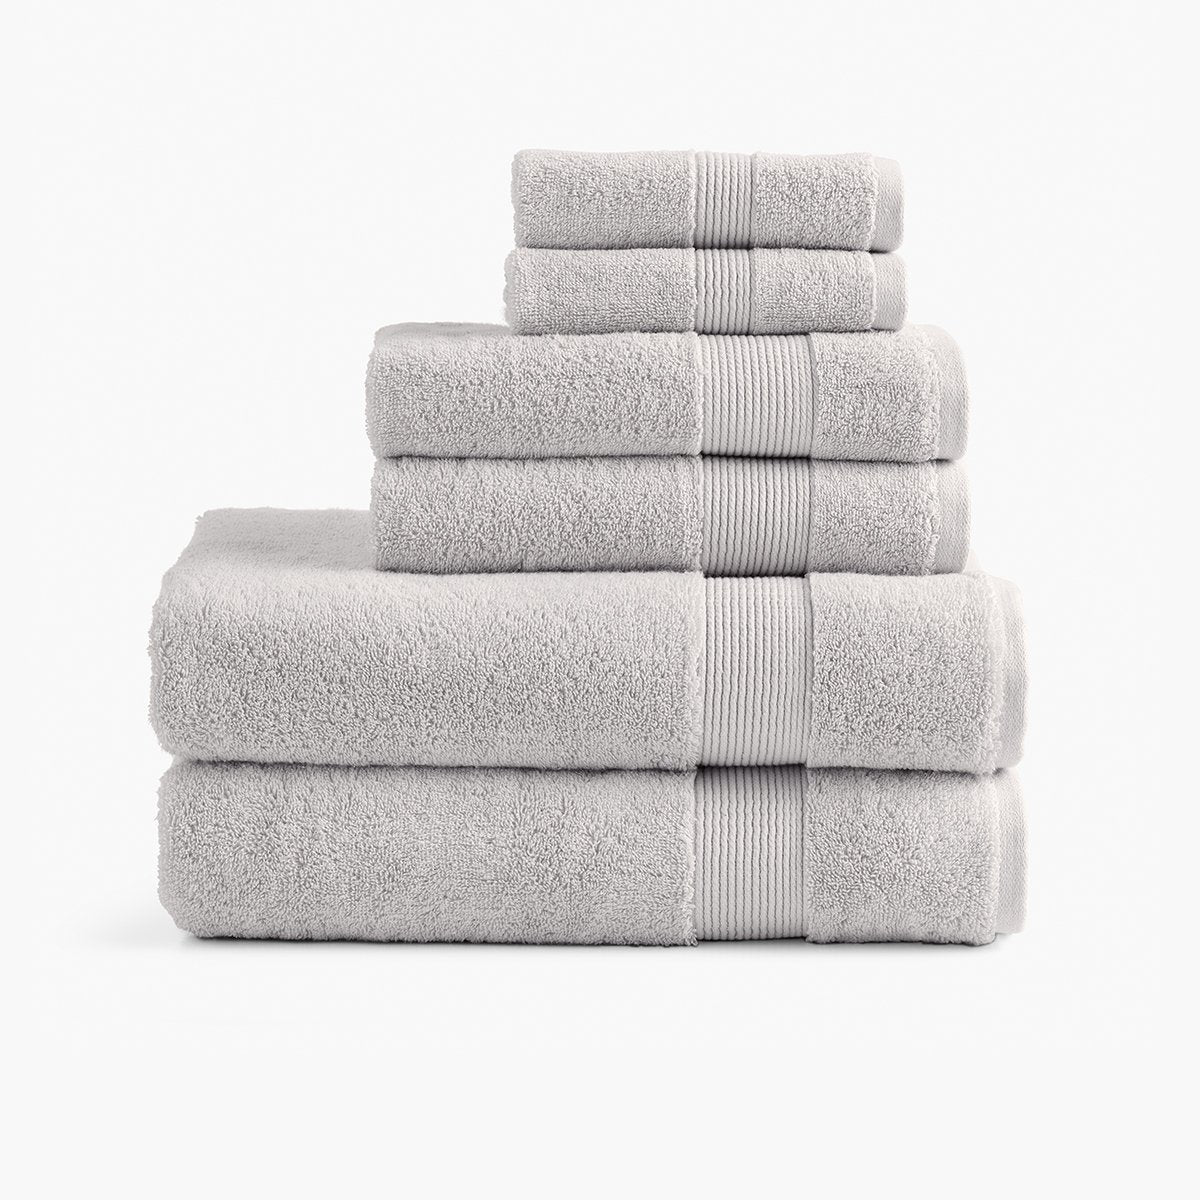 Grey Towels, The Classic Grey Towels